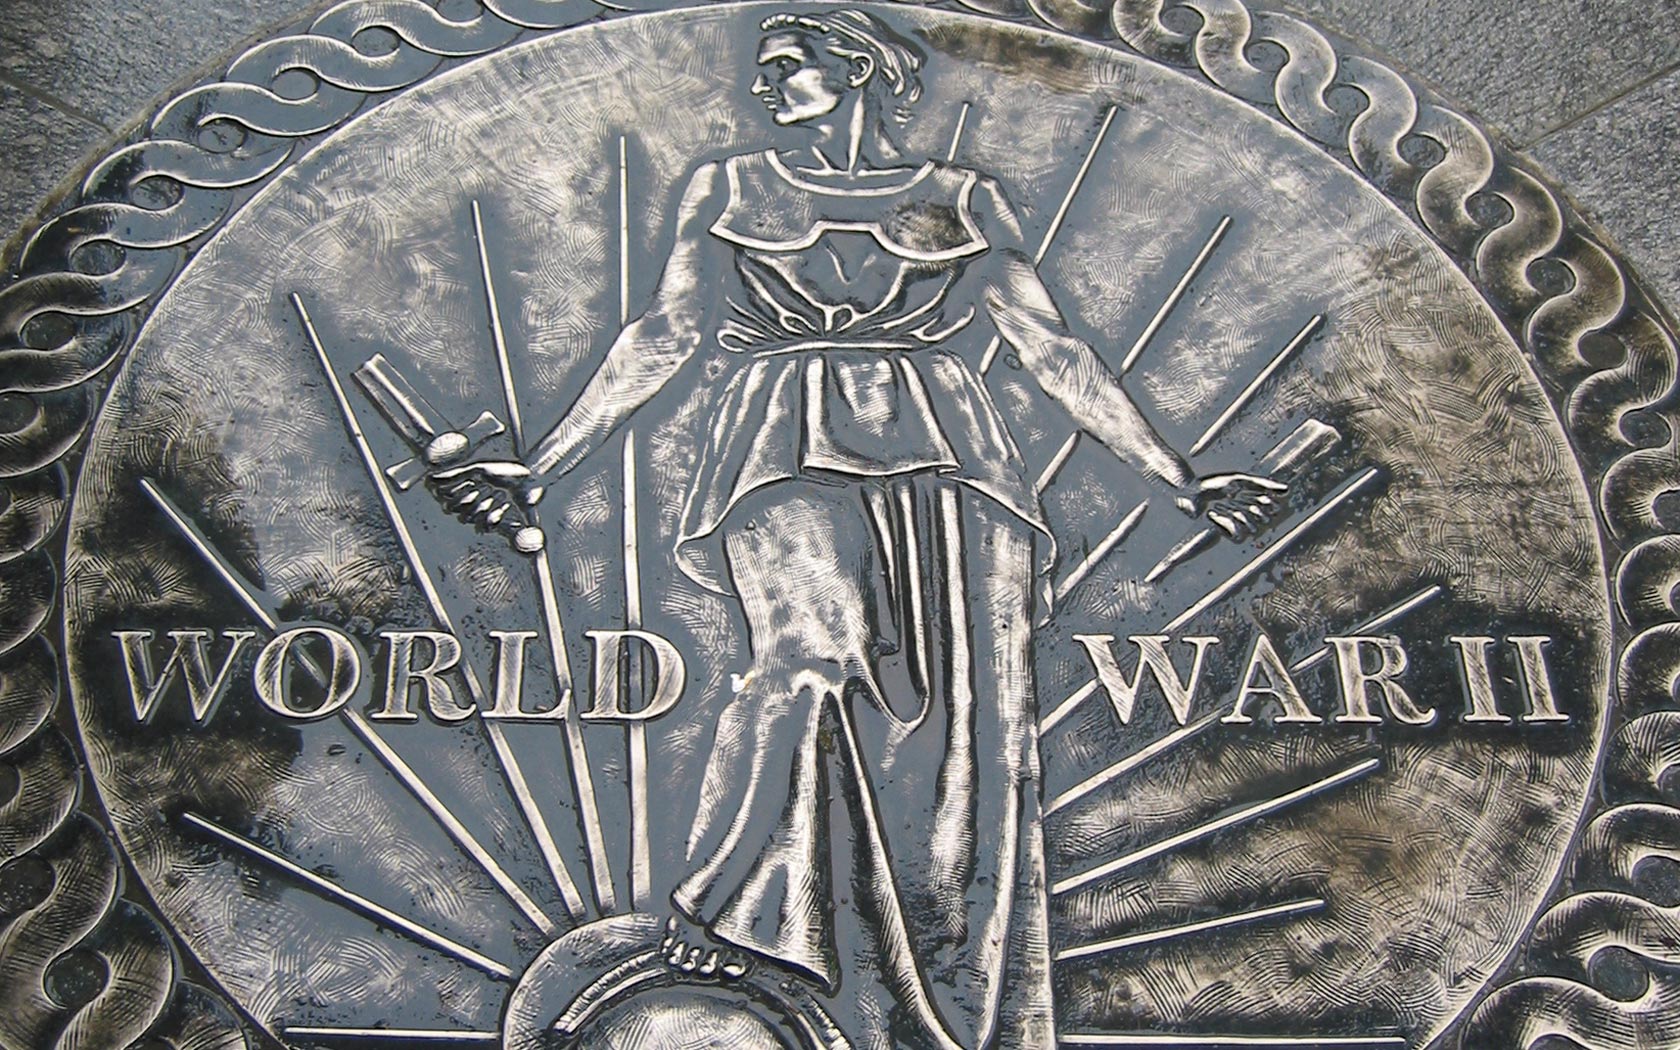 General 1680x1050 World War II symbolism metal war